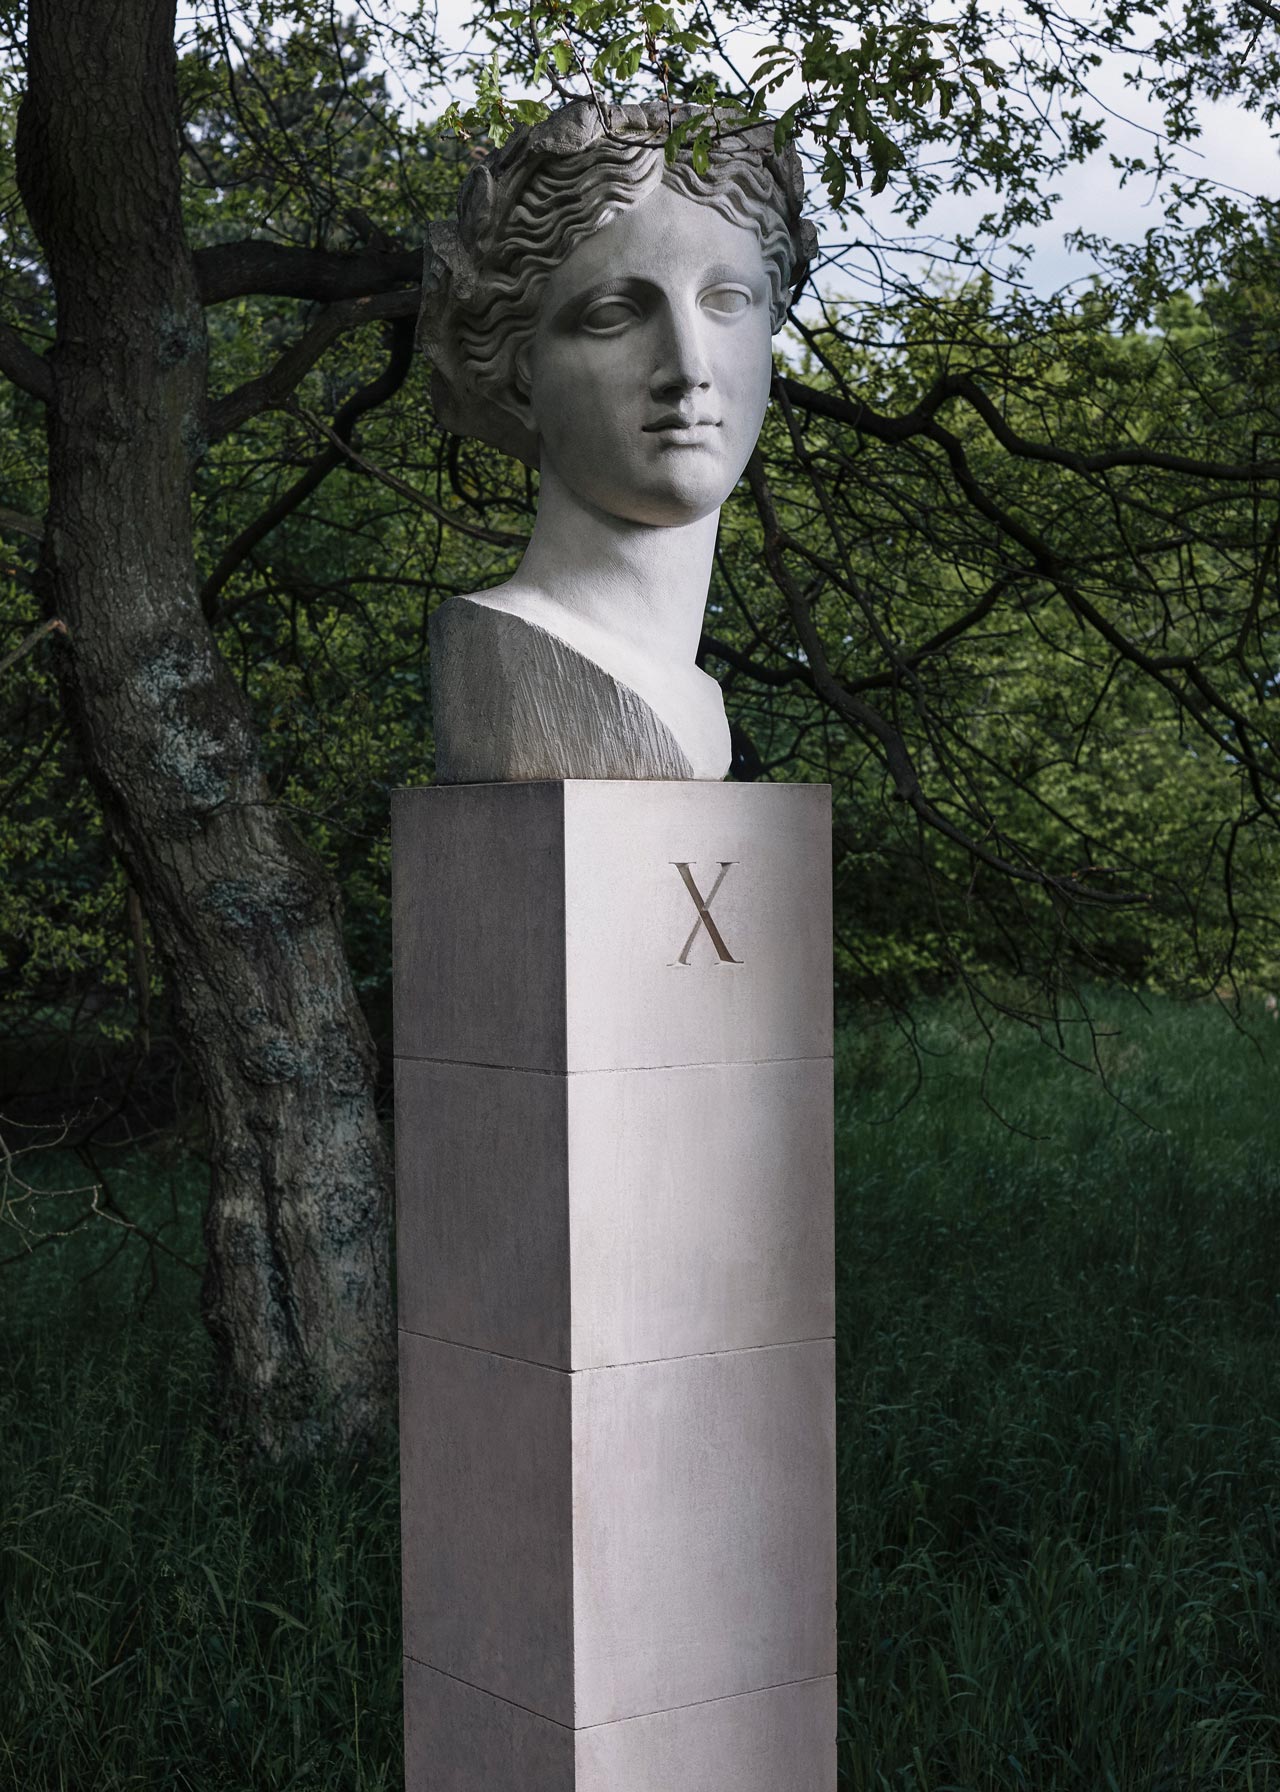 A sculpture by Ian Hamilton Finlay